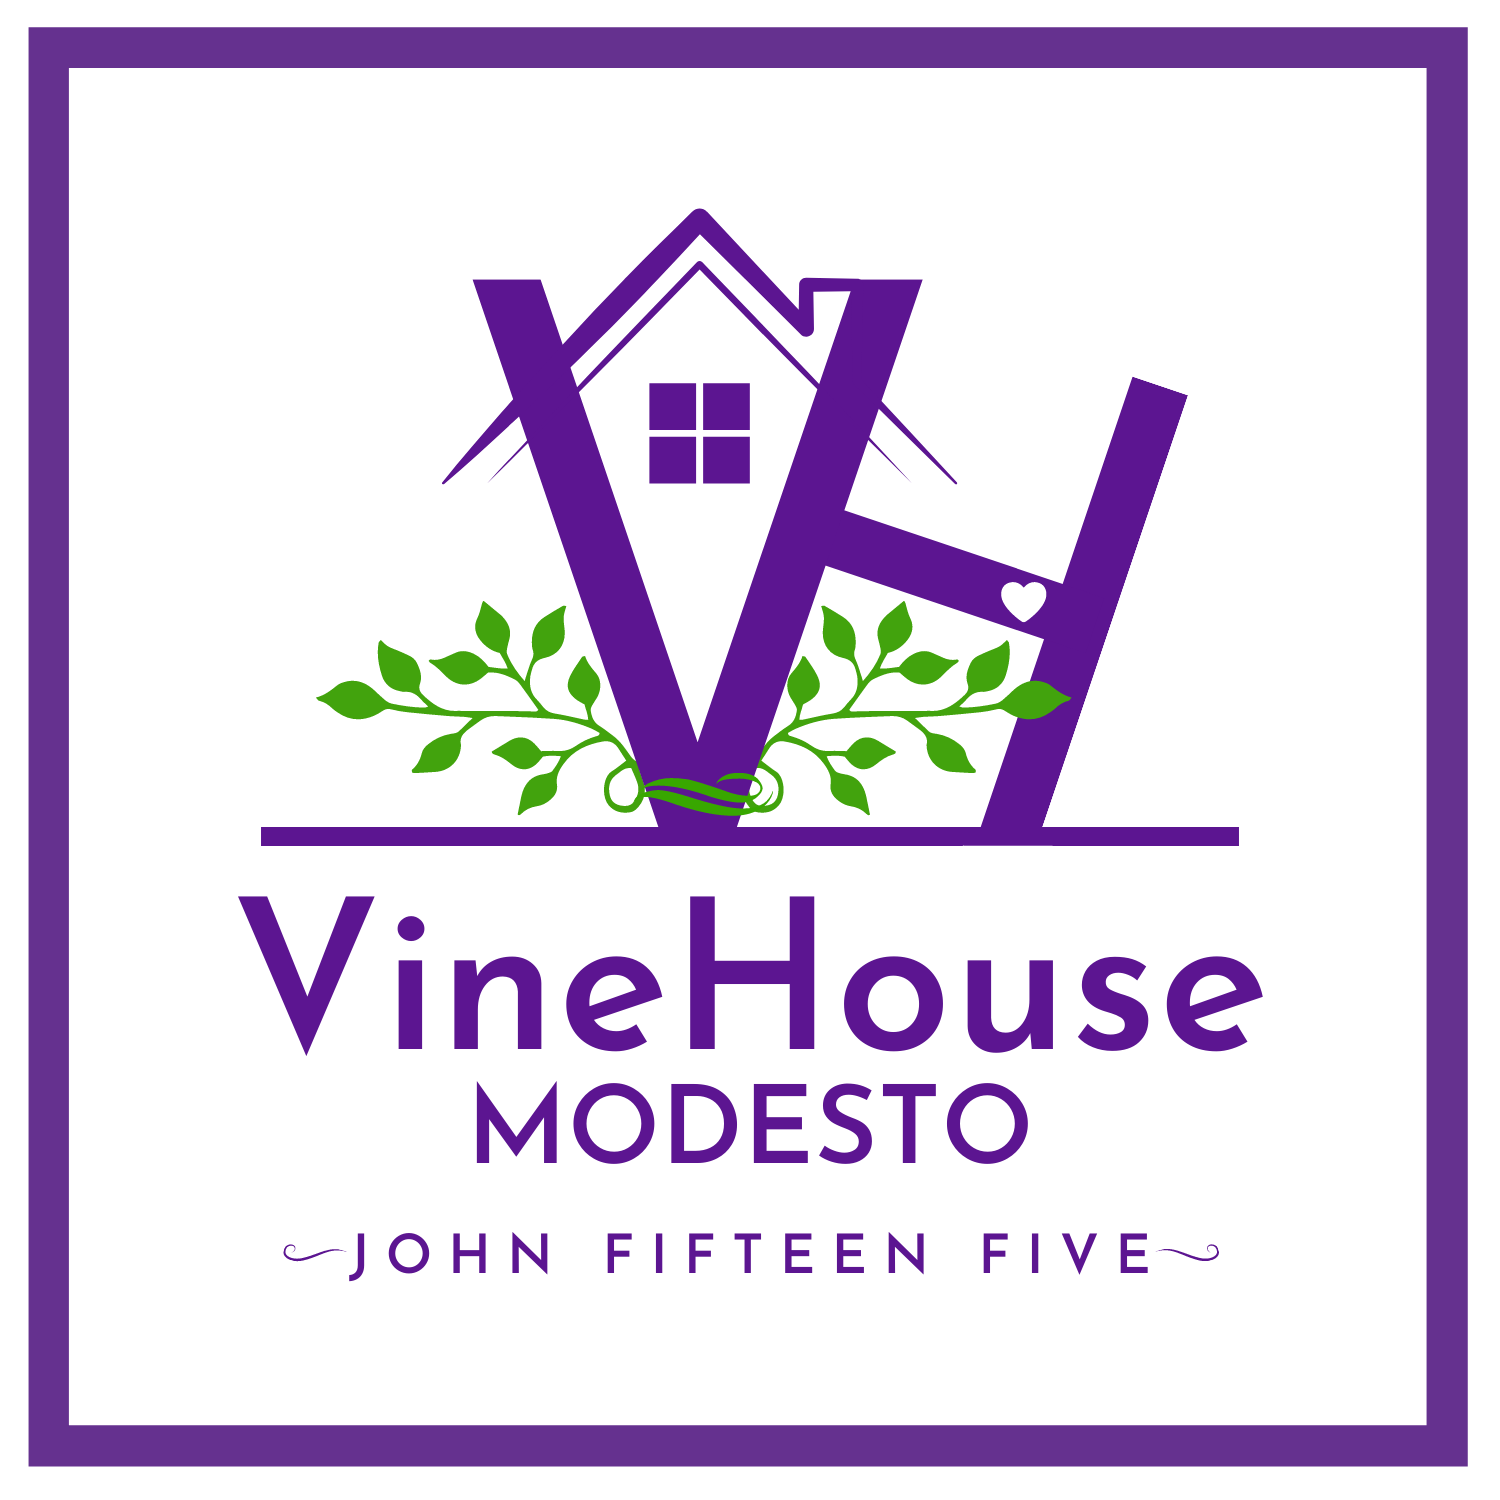 VINE HOUSE MODESTO